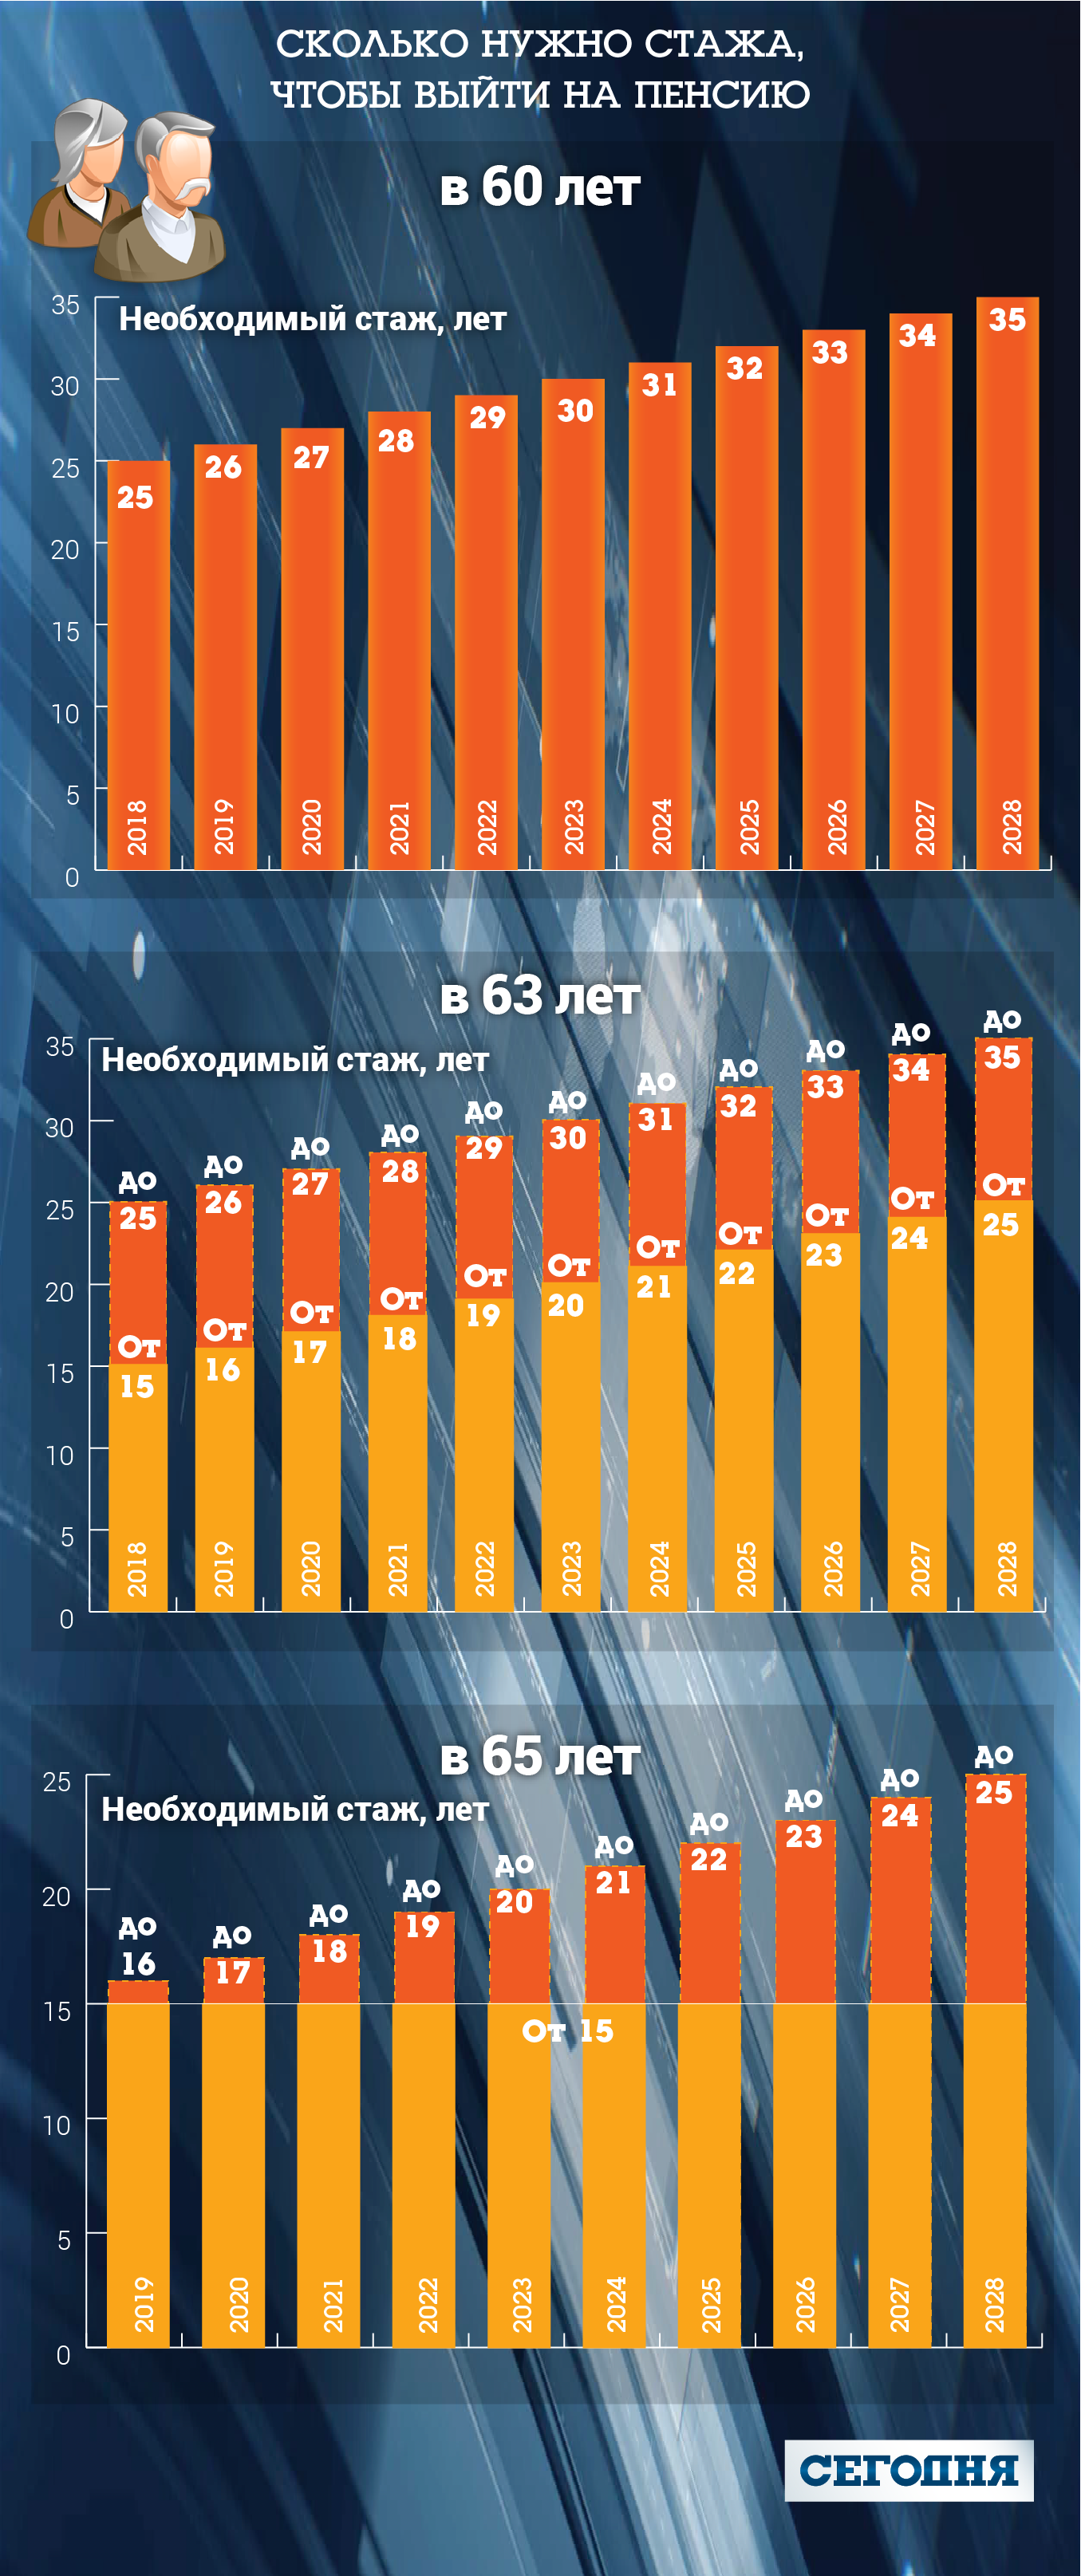 Az ukrajnai nyugdíjreform összes újítása: részletek.  Az ukrán miniszteri kabinet jóváhagyta a nyugdíjreformról szóló törvénytervezetet